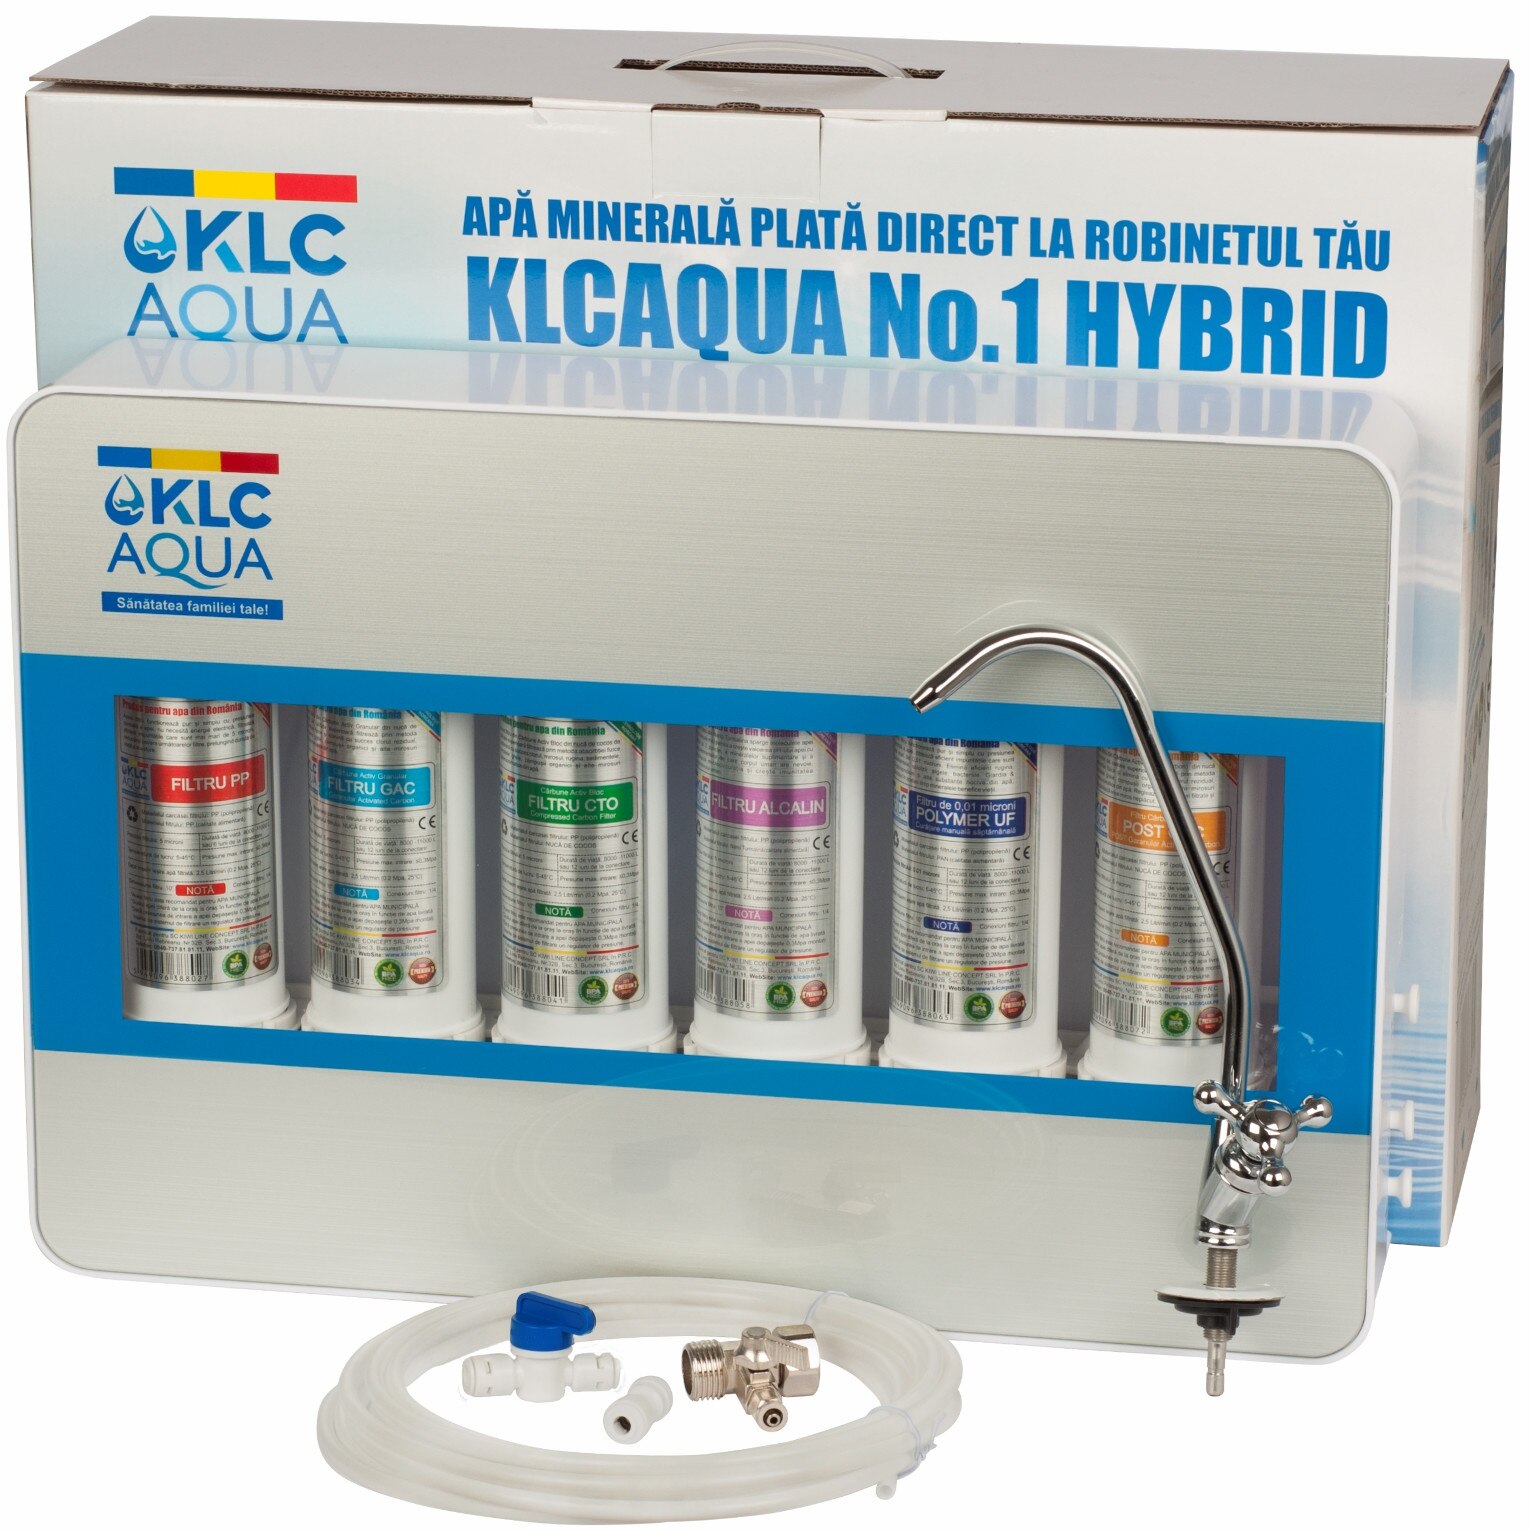 Fotografie Filtru de apa KLCAQUA No.1 HYBRID, 6 stadii de filtrare cu alcalinizare de 0.01 microni, statie de ultrafiltrare